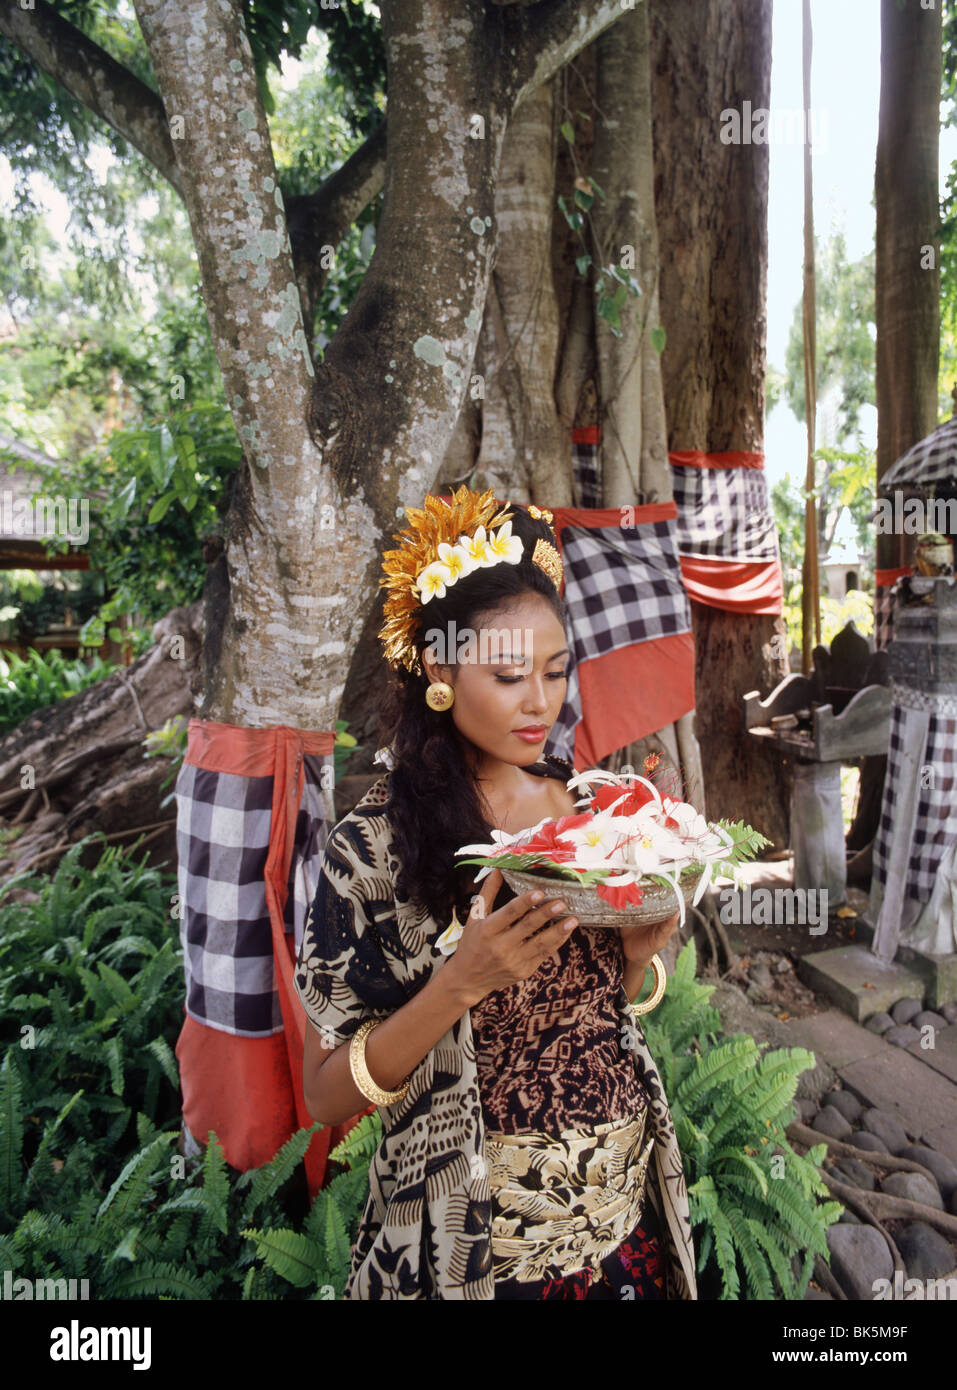 Ragazza Balinese con offerte sotto il banyan tree di Bali, Indonesia, Asia sud-orientale, Asia Foto Stock